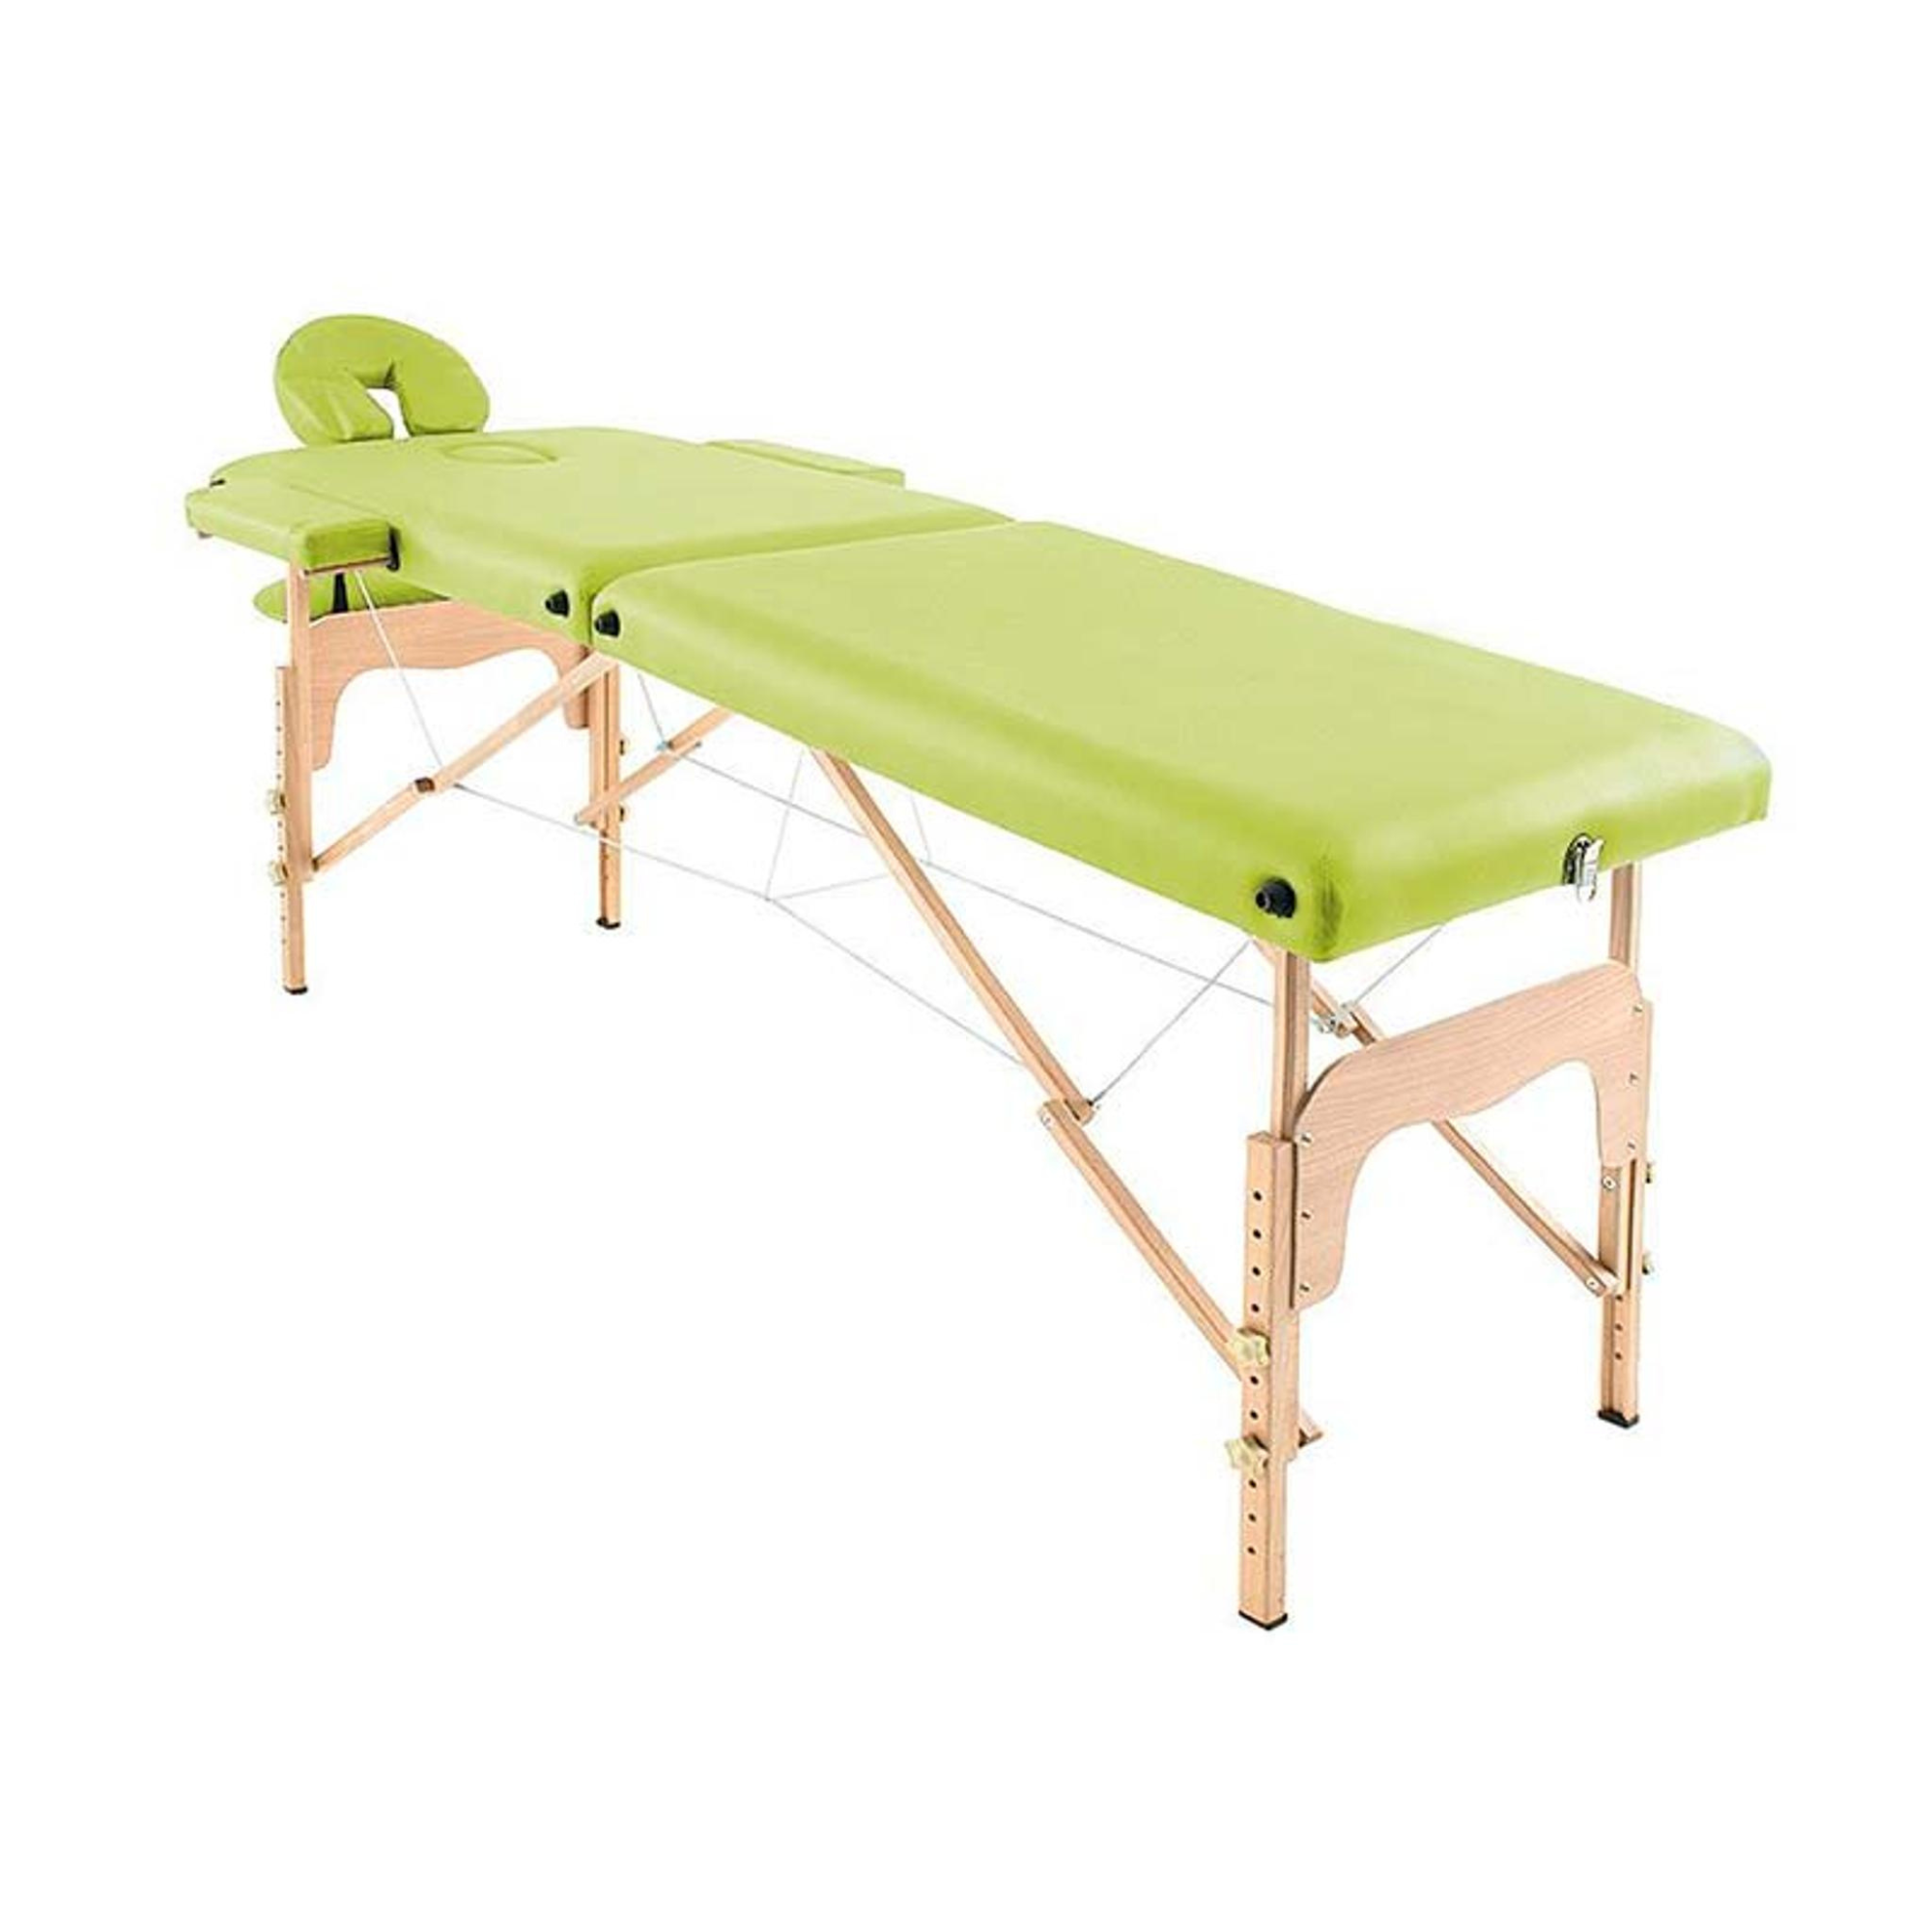 Table de massage pliante en bois 182 x 60 cm sans dossier - 6 coloris